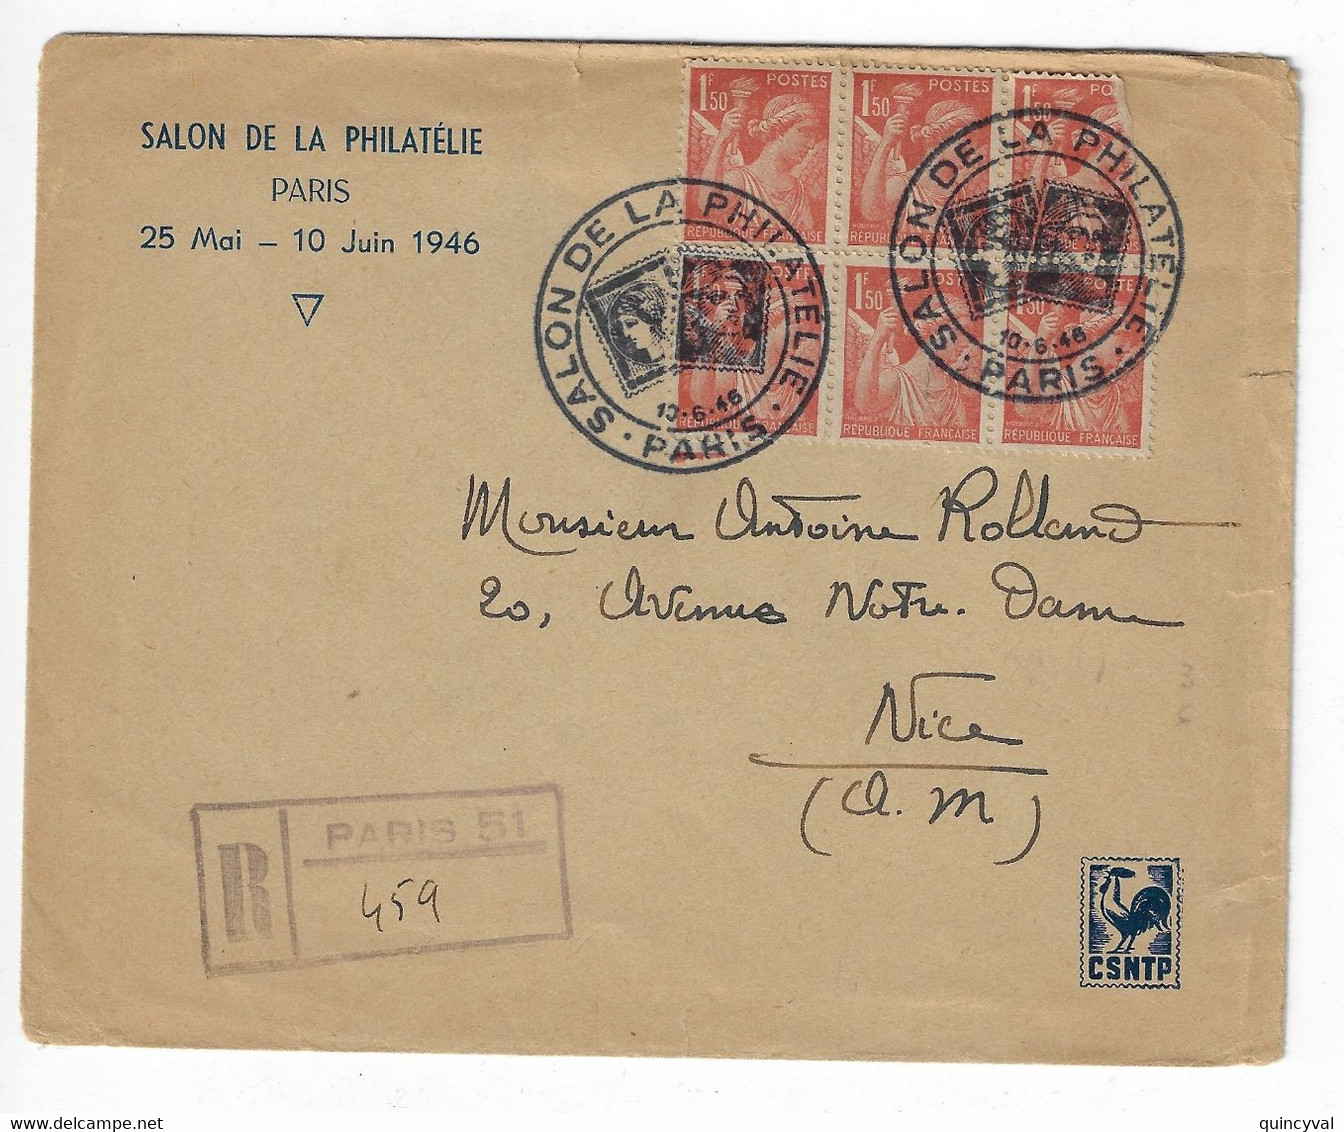 PARIS SALON DE LA PHILATELIE CSNTP 1946 Lettre Recommandée Grille Pas Etiquette Bureau Temporaire 1,50 F Iris Yv 652 - Matasellos Conmemorativos